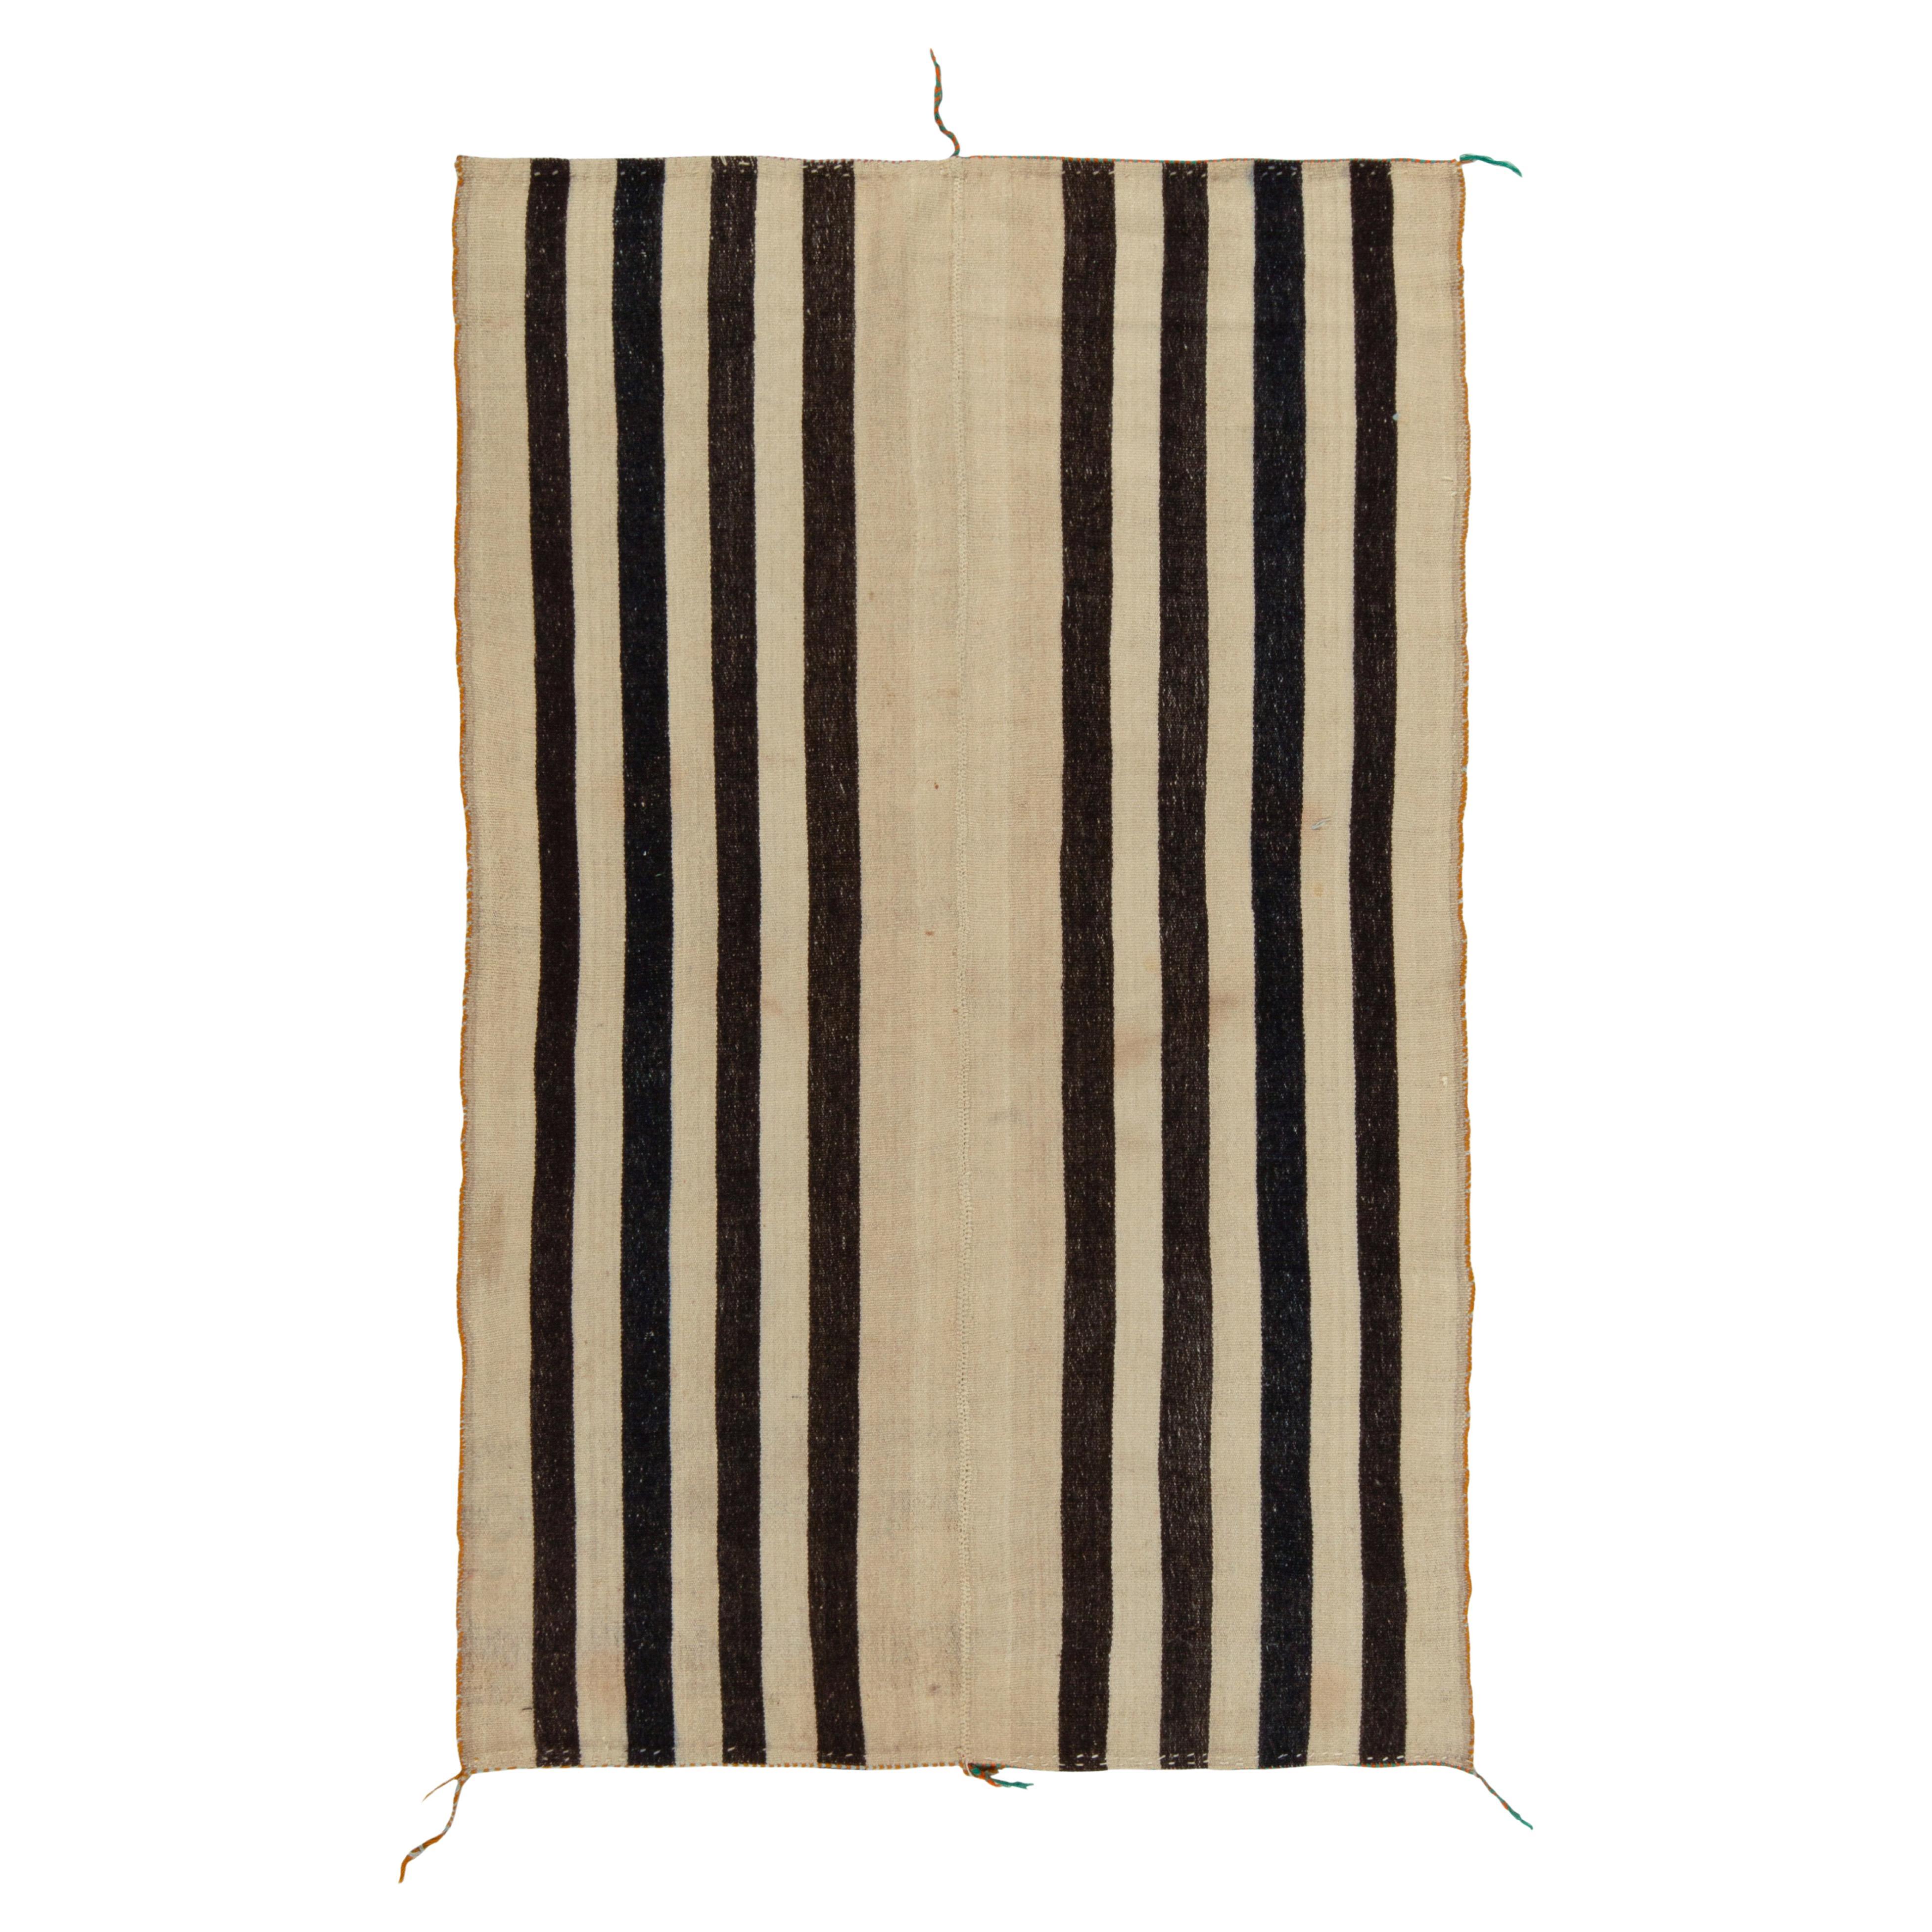 Vintage Turkish Kilim Rug in Beige-Brown & Black Stripe Pattern by Rug & Kilim